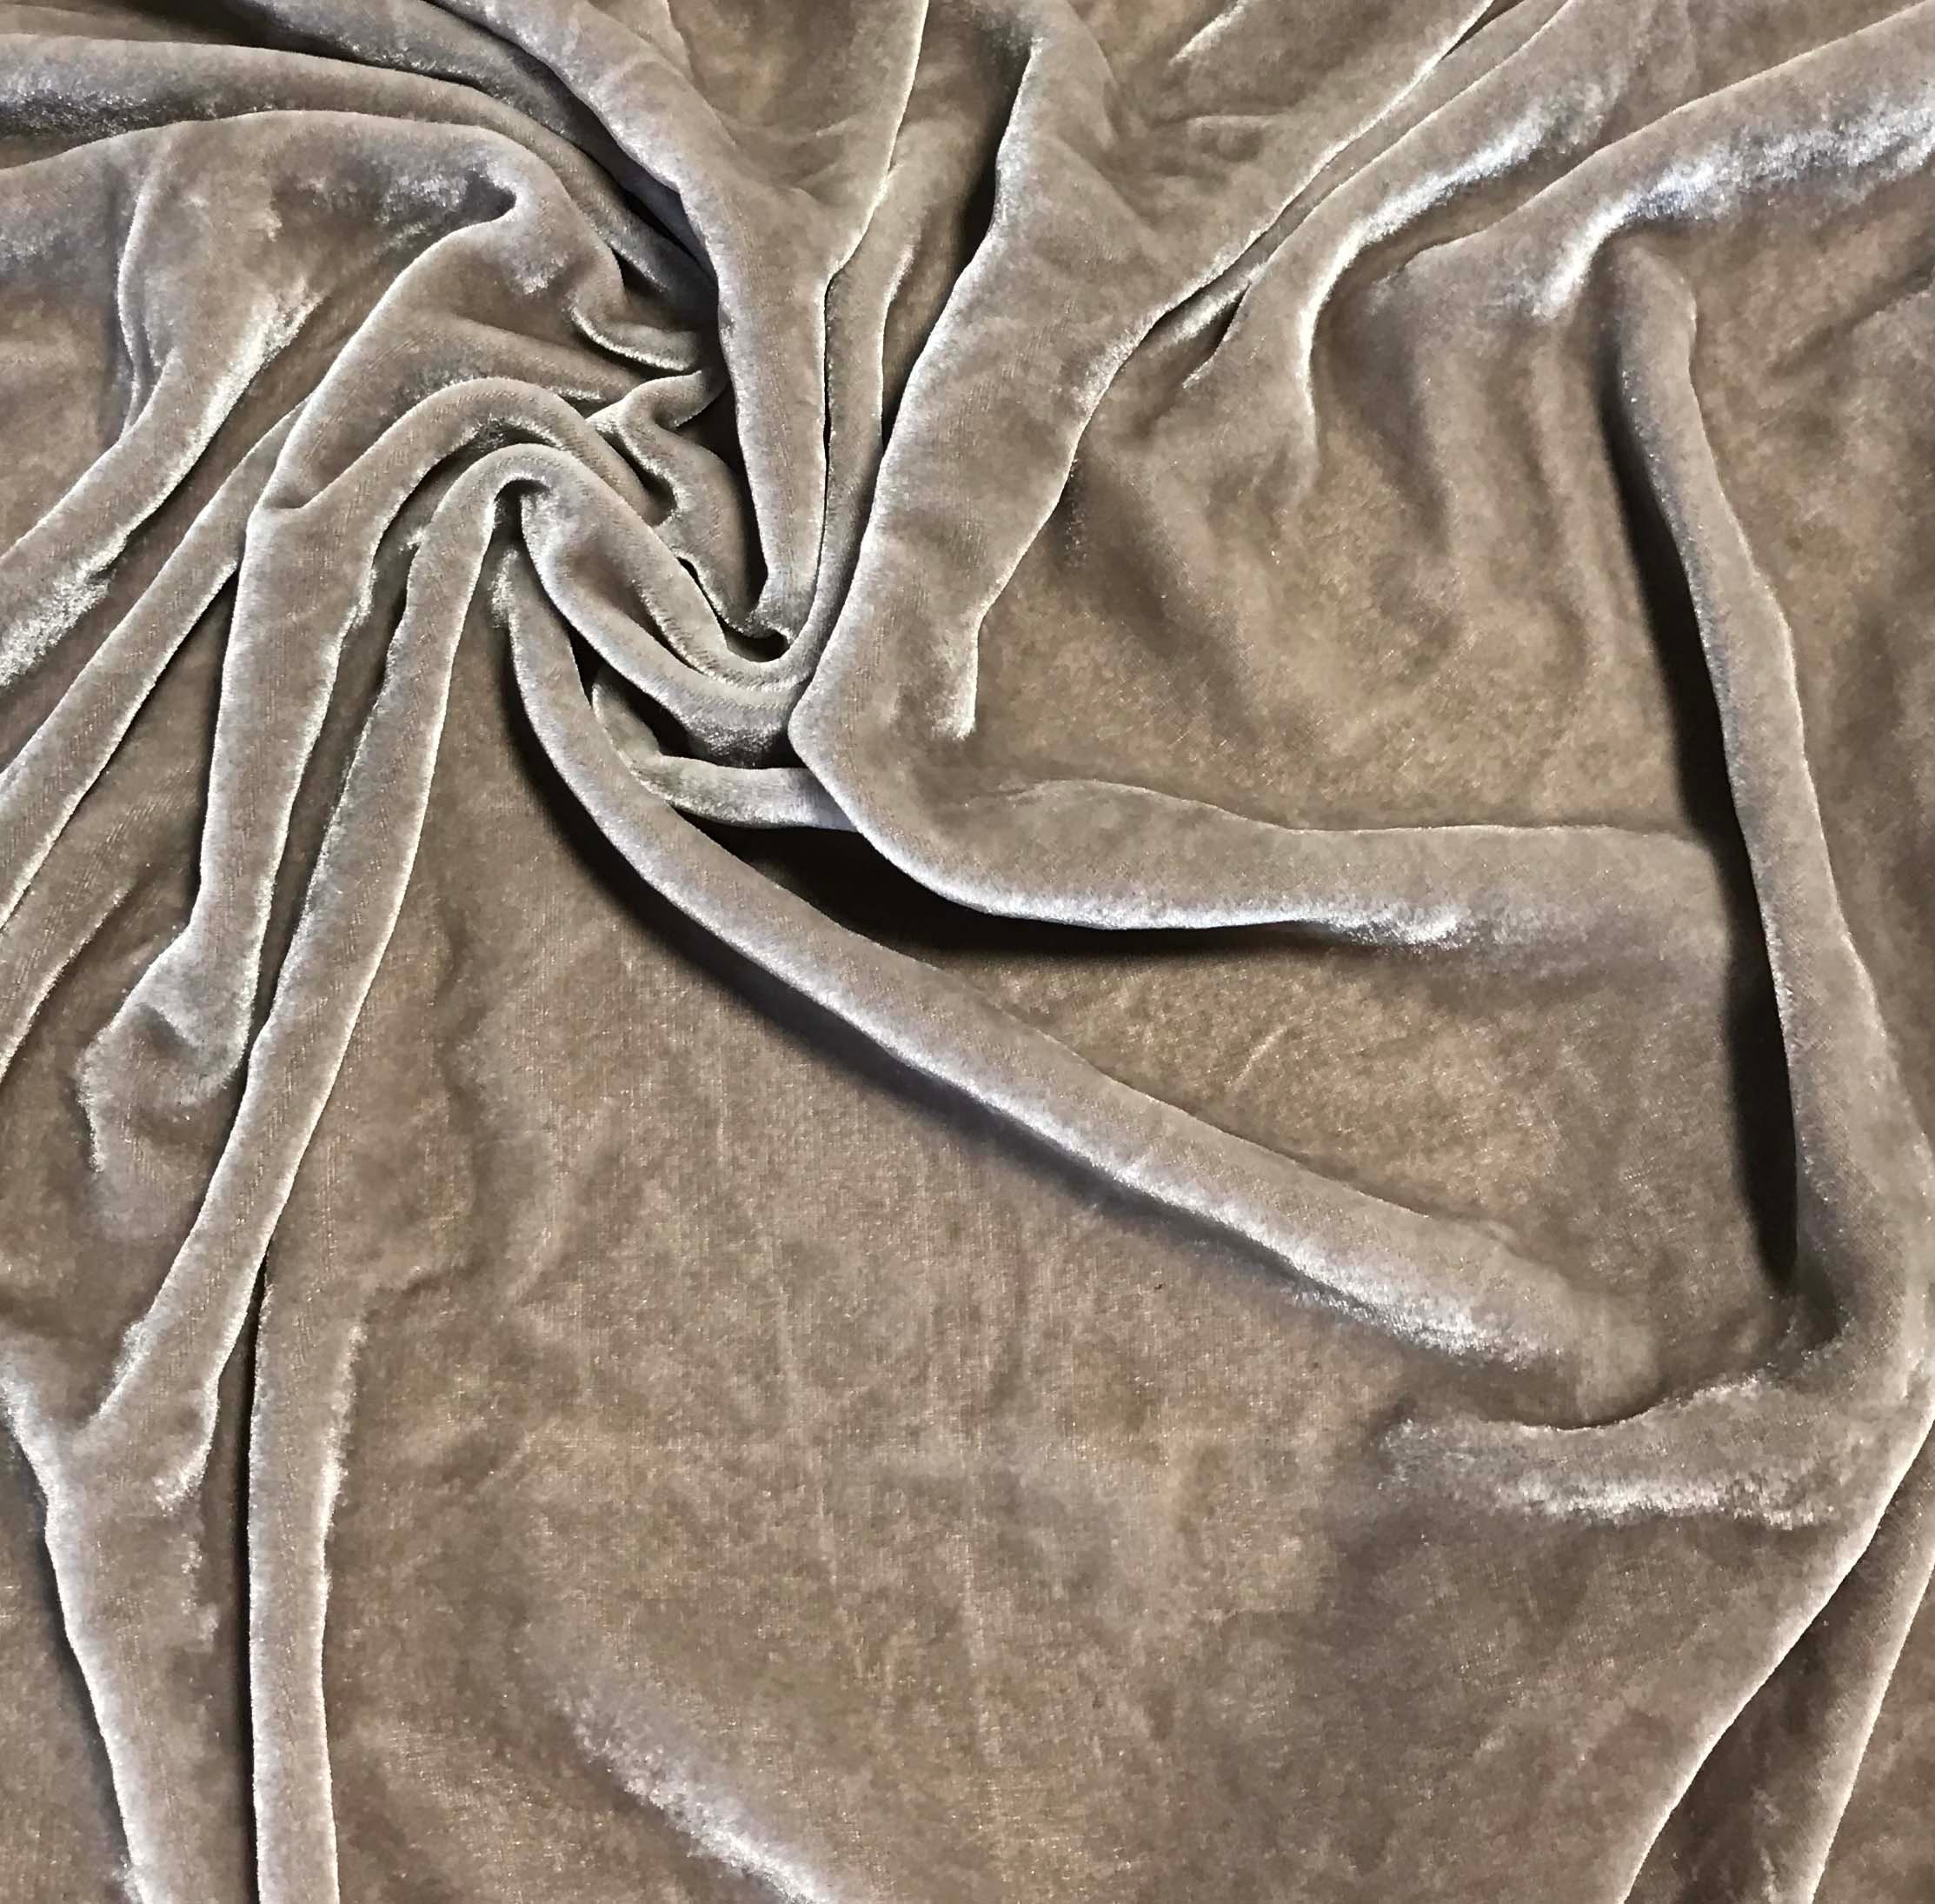  Quality Beige/Tan 100% Cotton Velvet Velour Fabric for